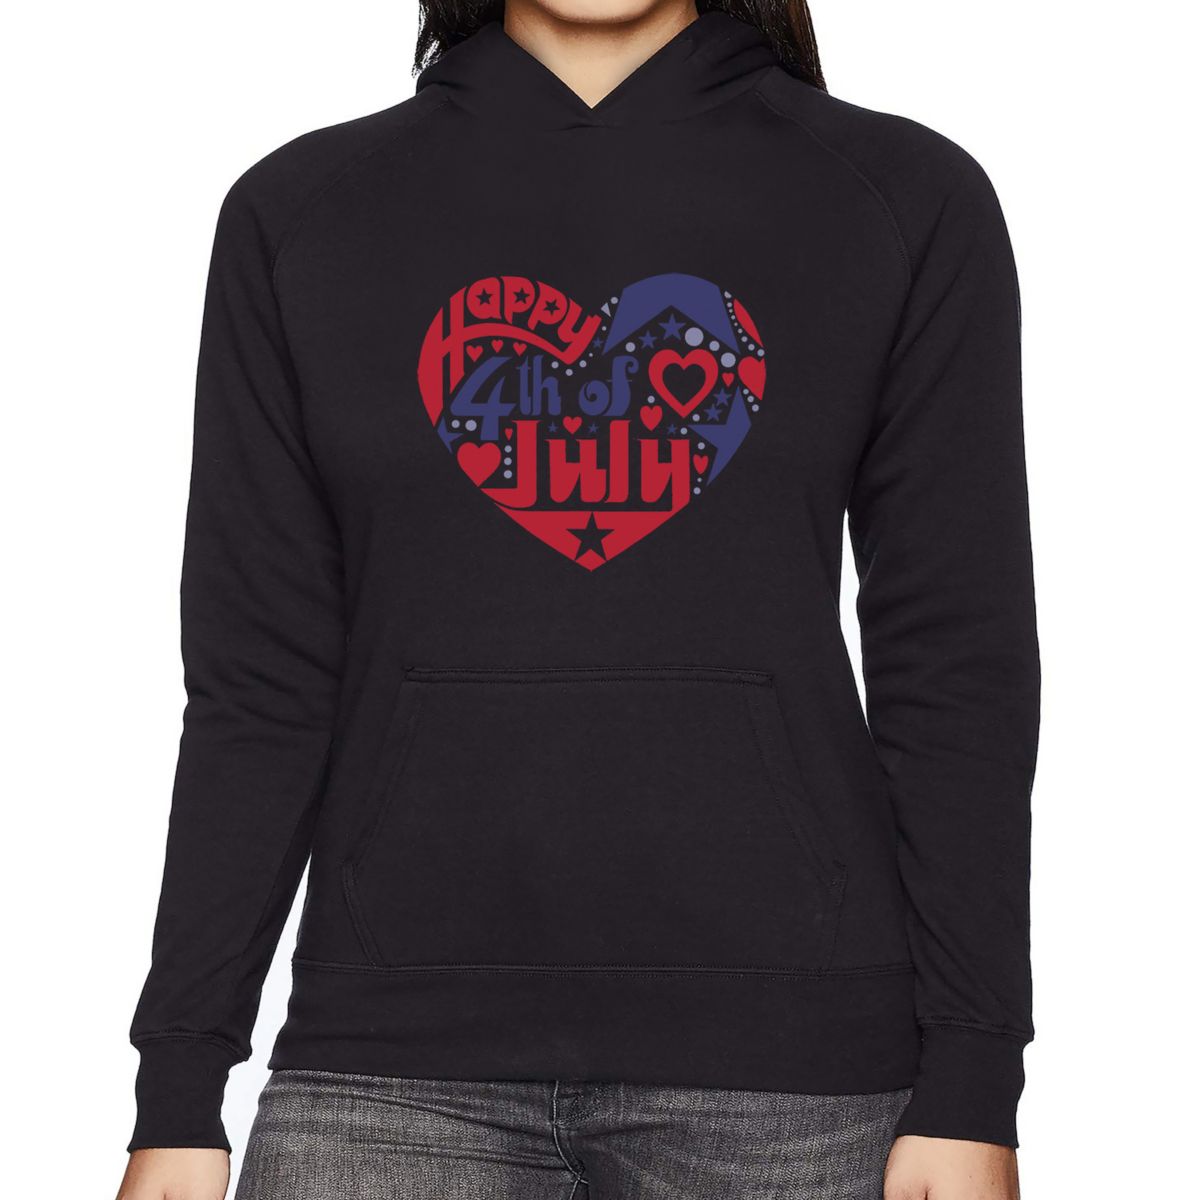 July 4th Heart - Women's Word Art Hooded Sweatshirt LA Pop Art